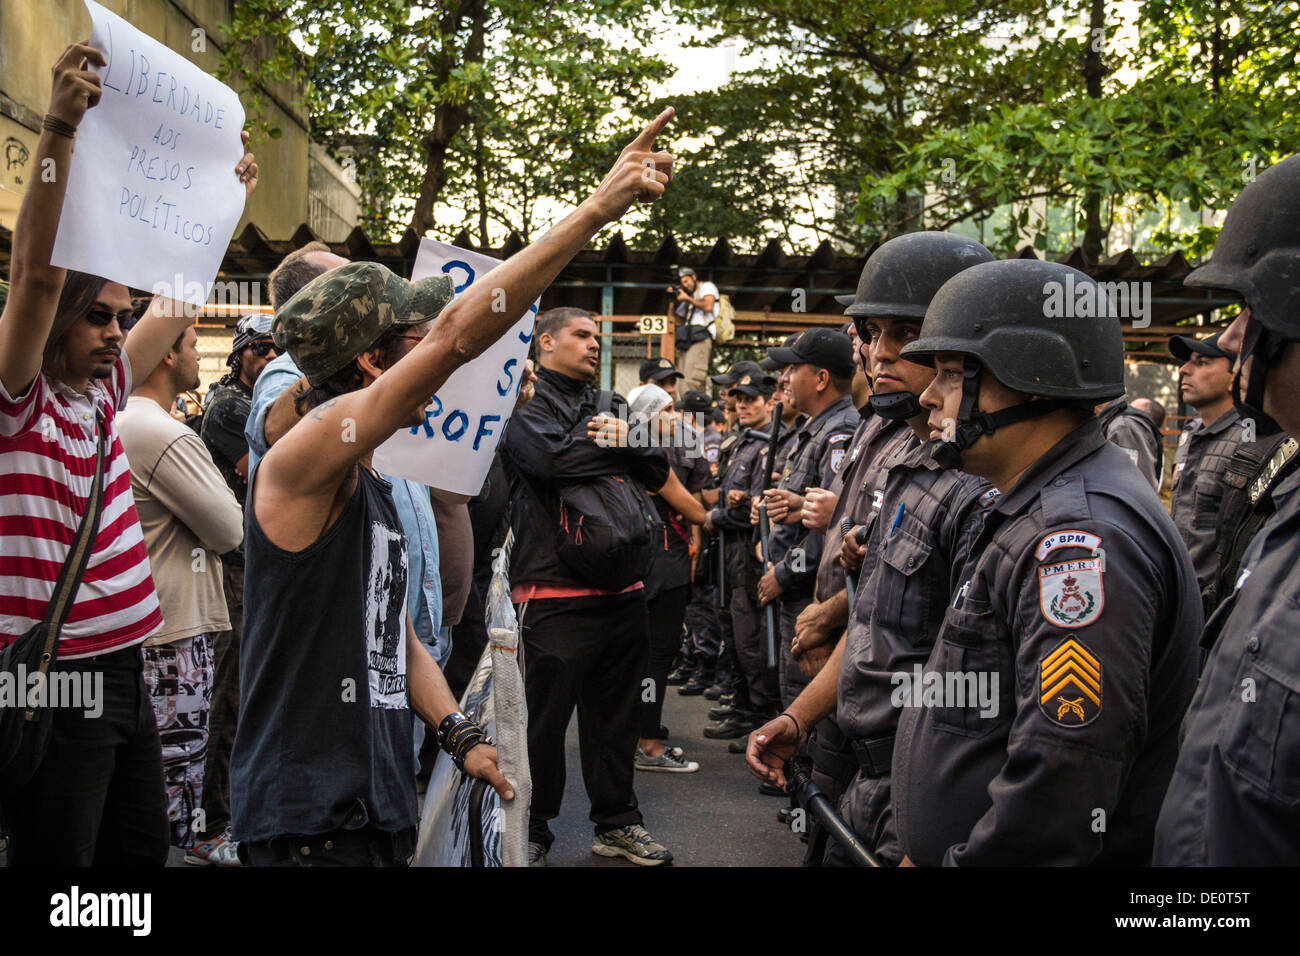 Au cours de protestation le 7 septembre - l'indépendance du Brésil - se termine dans la violence et la brutalité policière. Un homme âgé est touché et tombe Banque D'Images